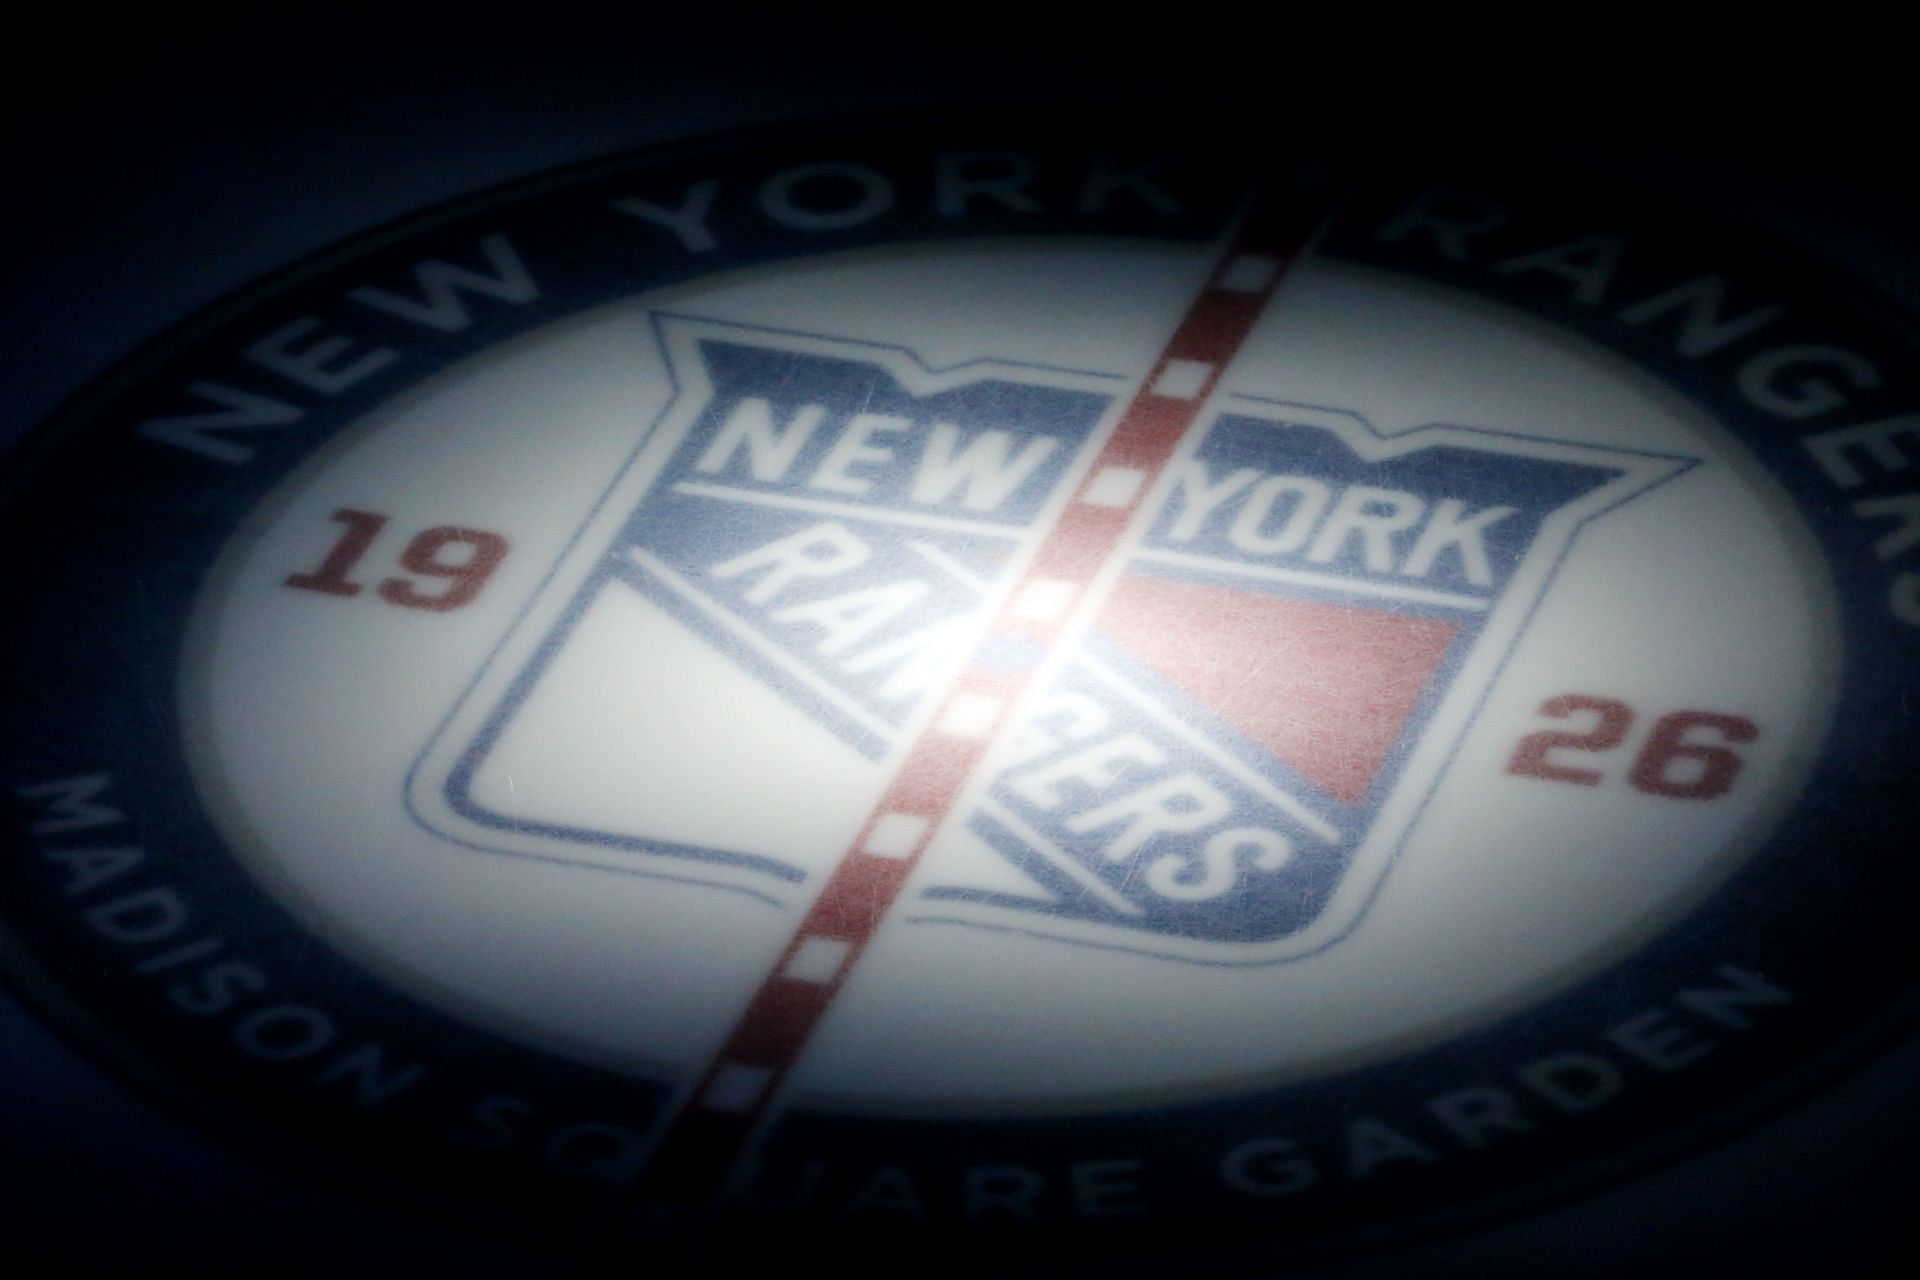 New York Rangers Schedule